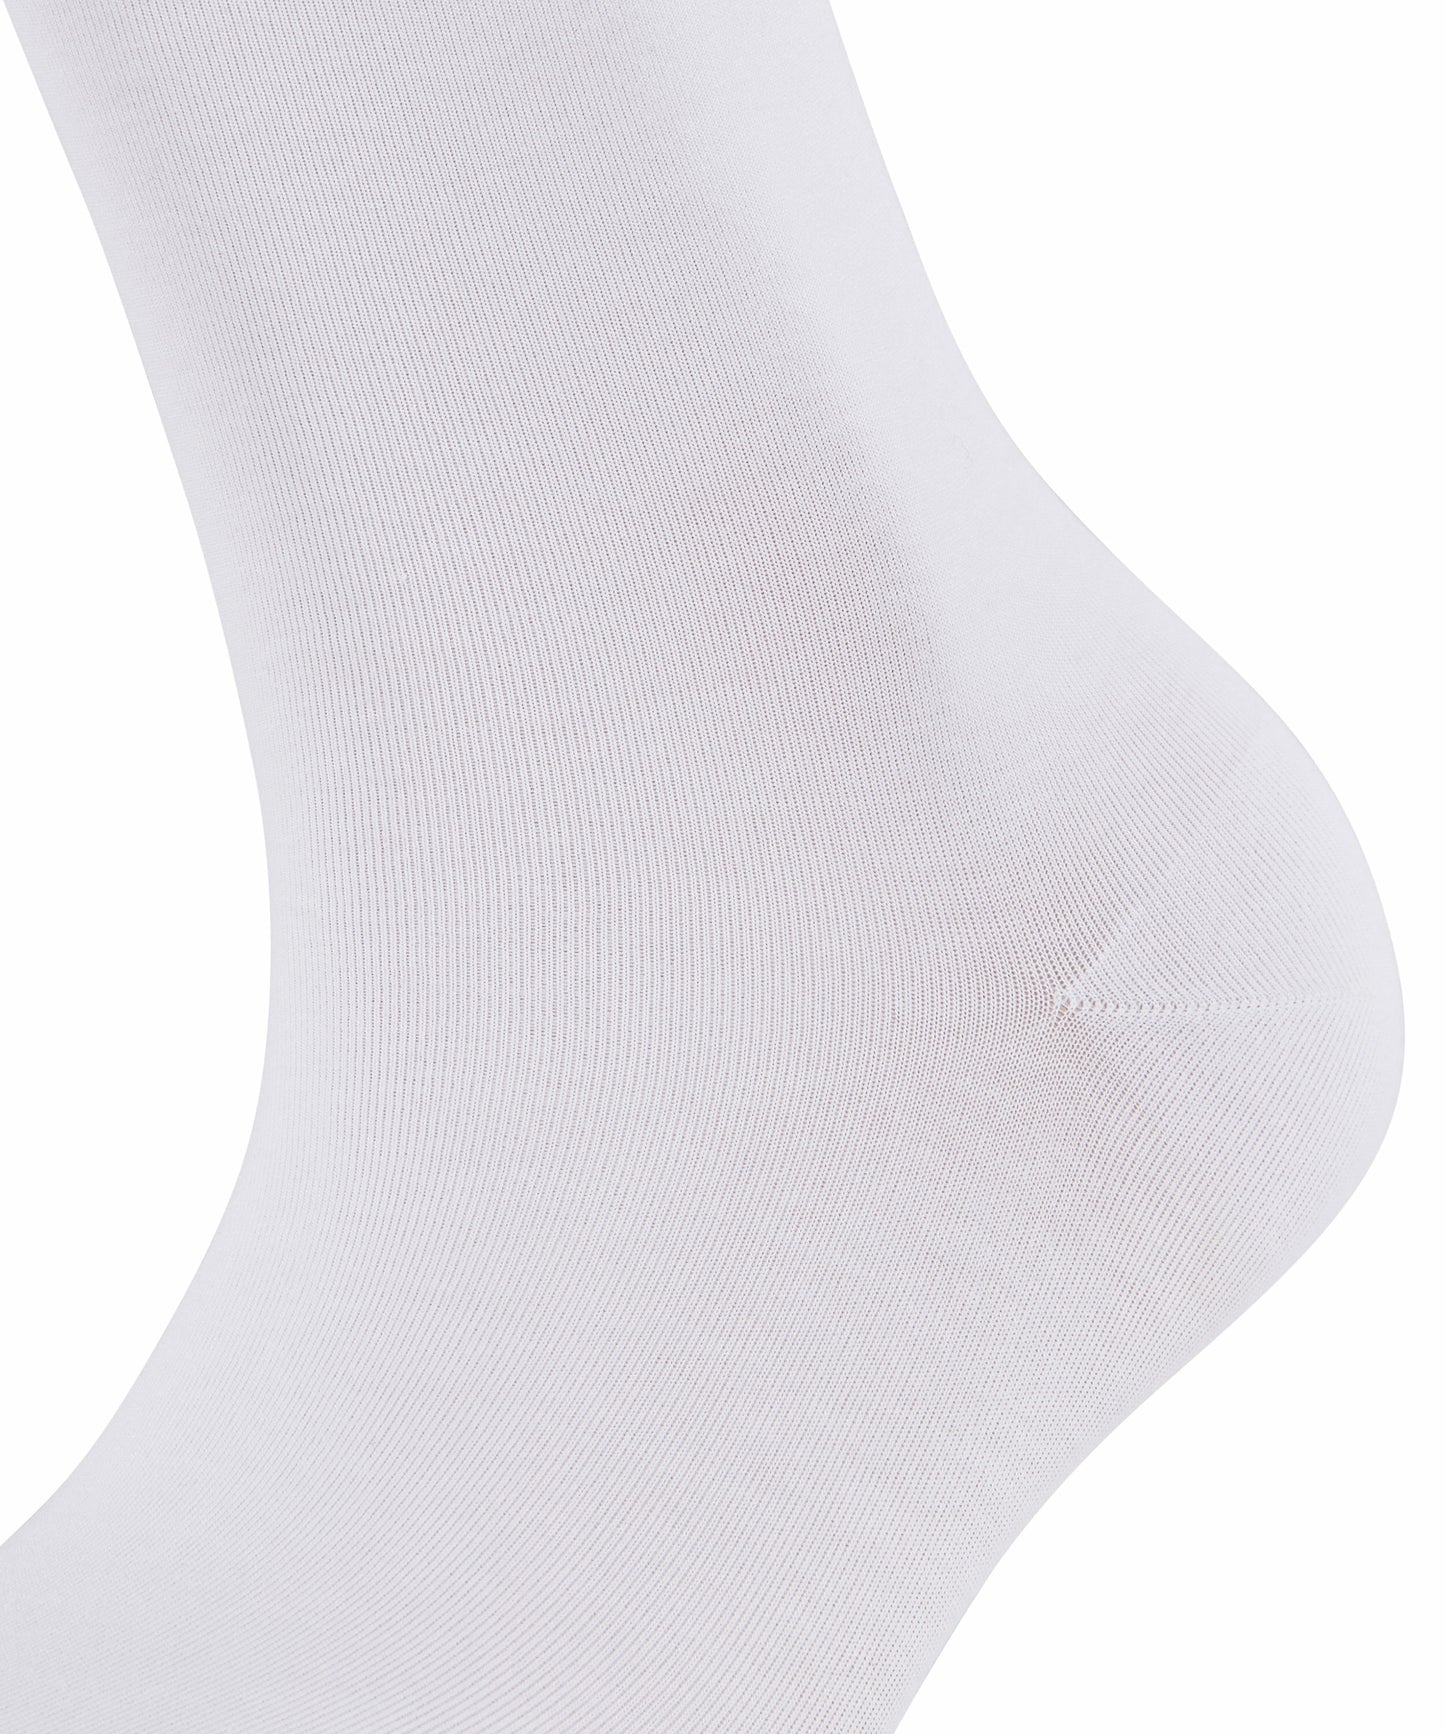 Socken Cotton Touch (White)